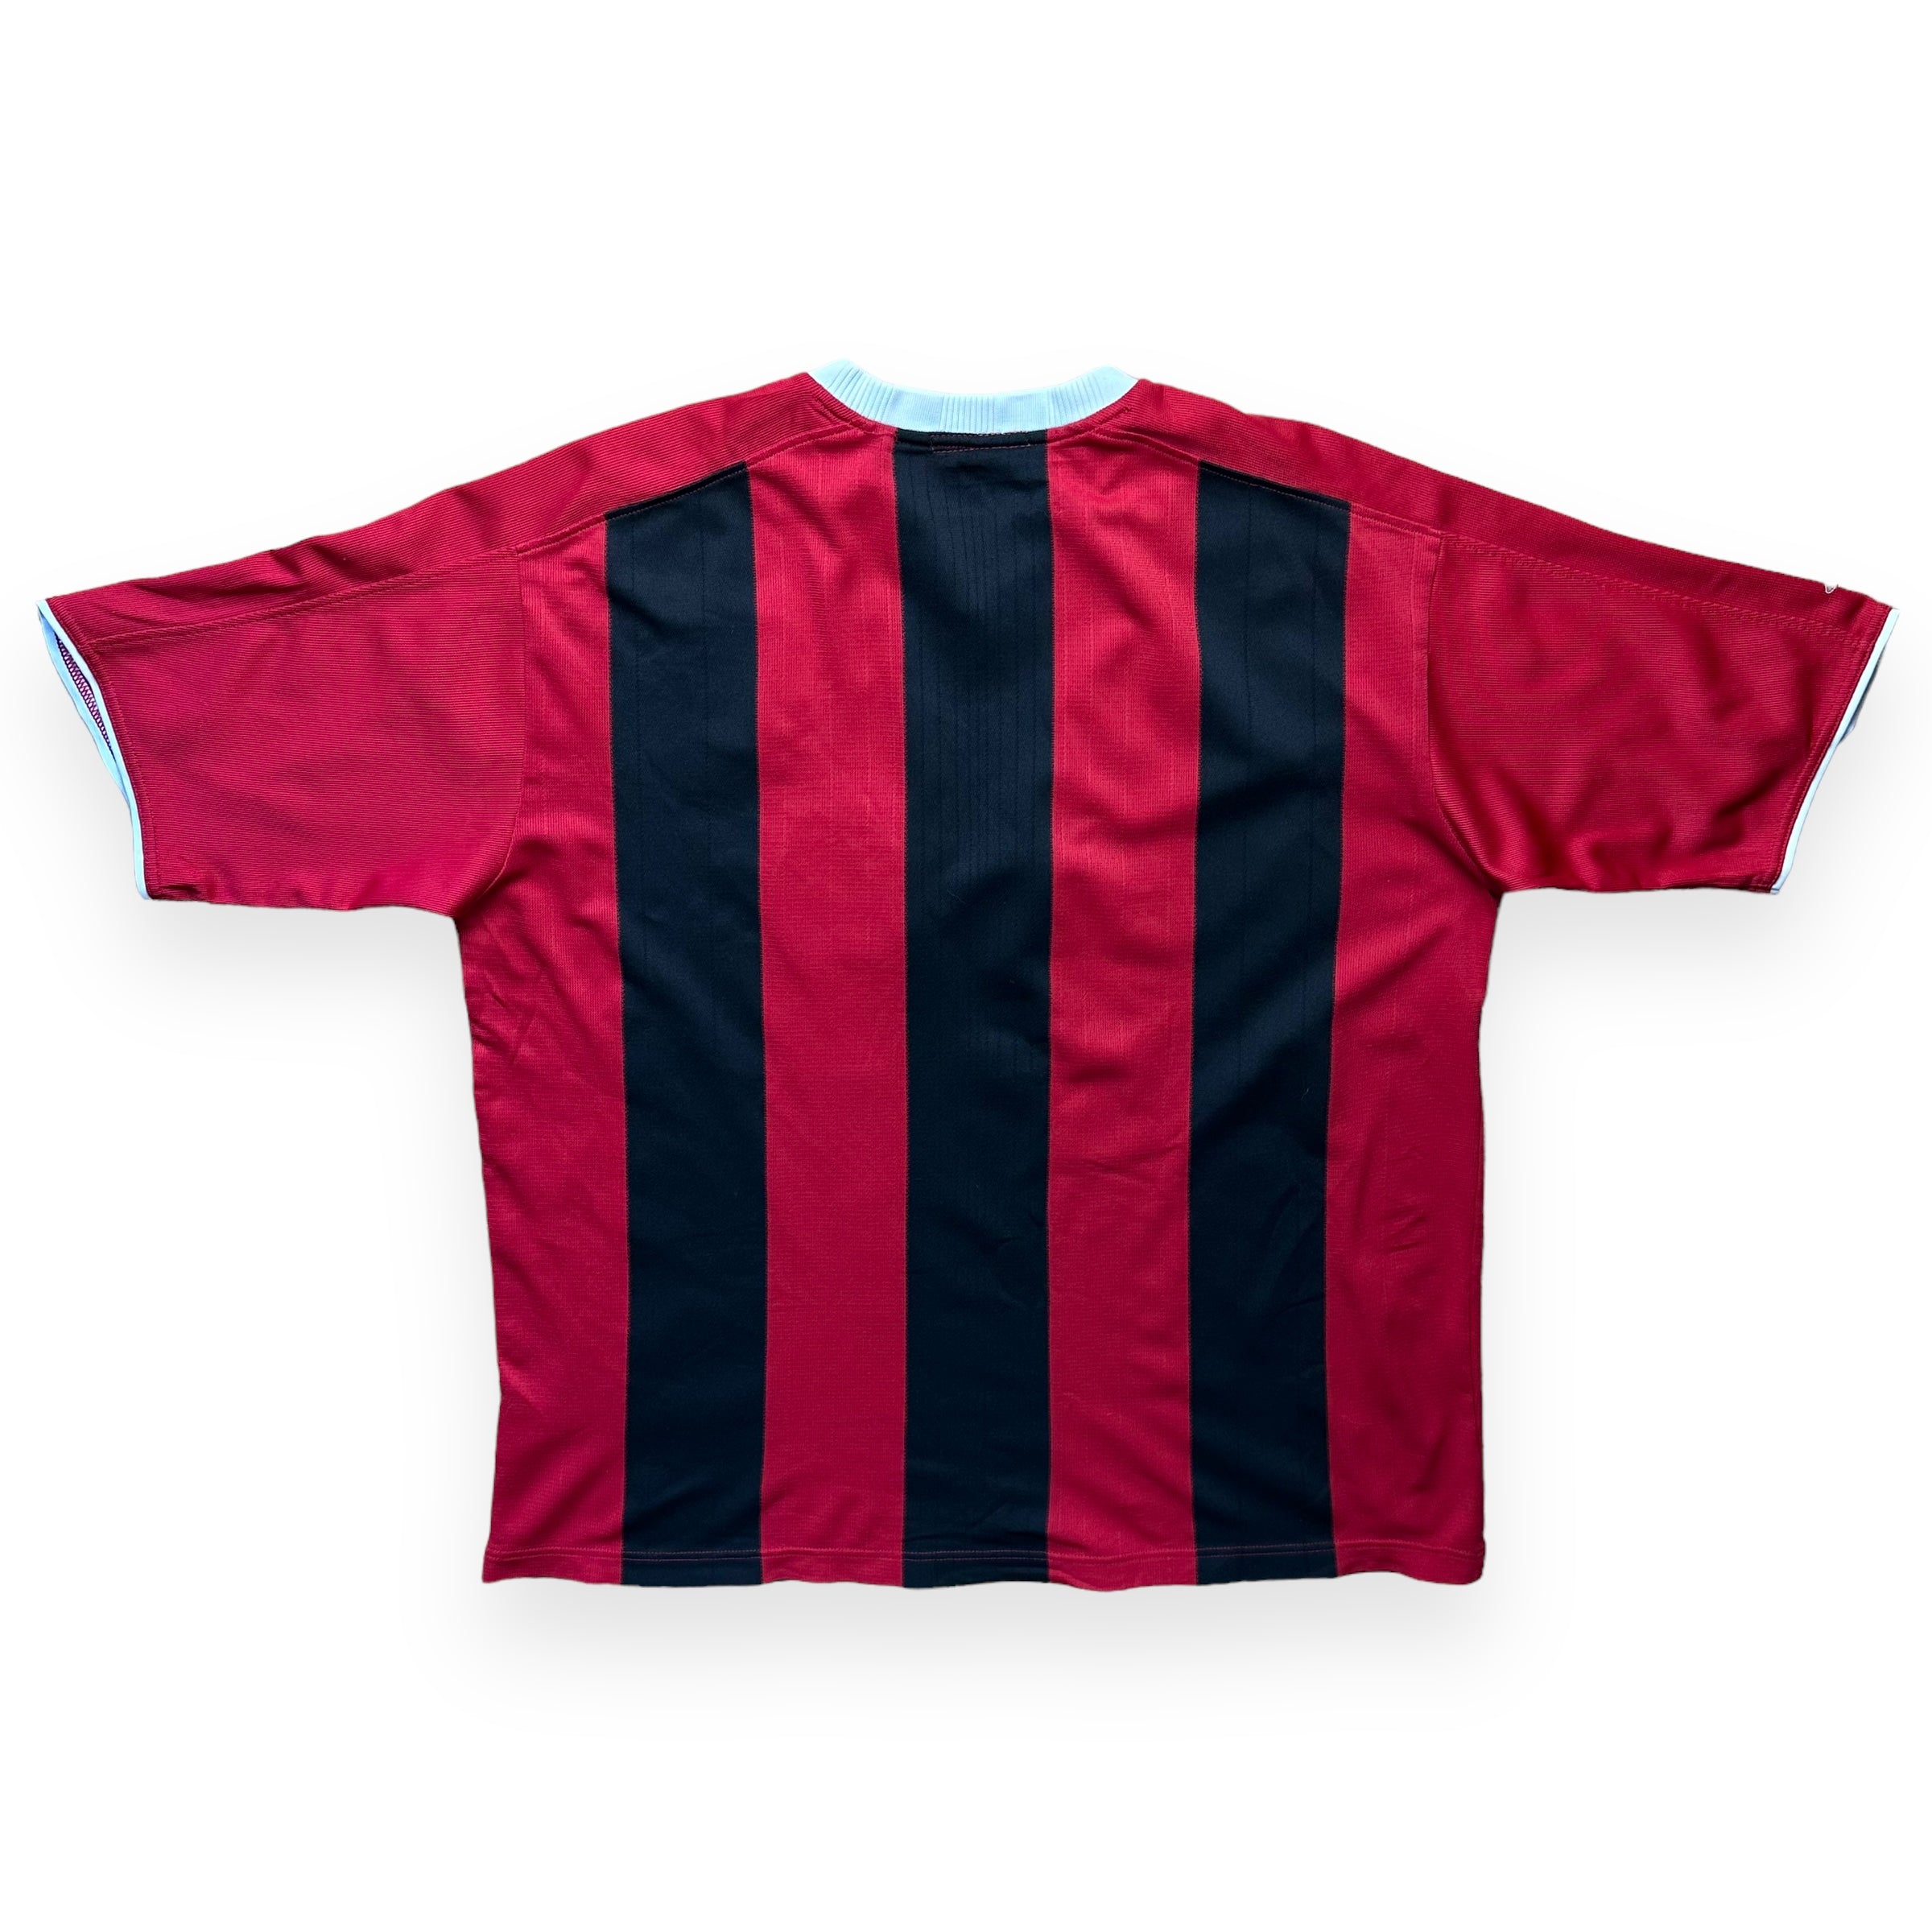 Manchester City 2003-04 Away Shirt (XL)